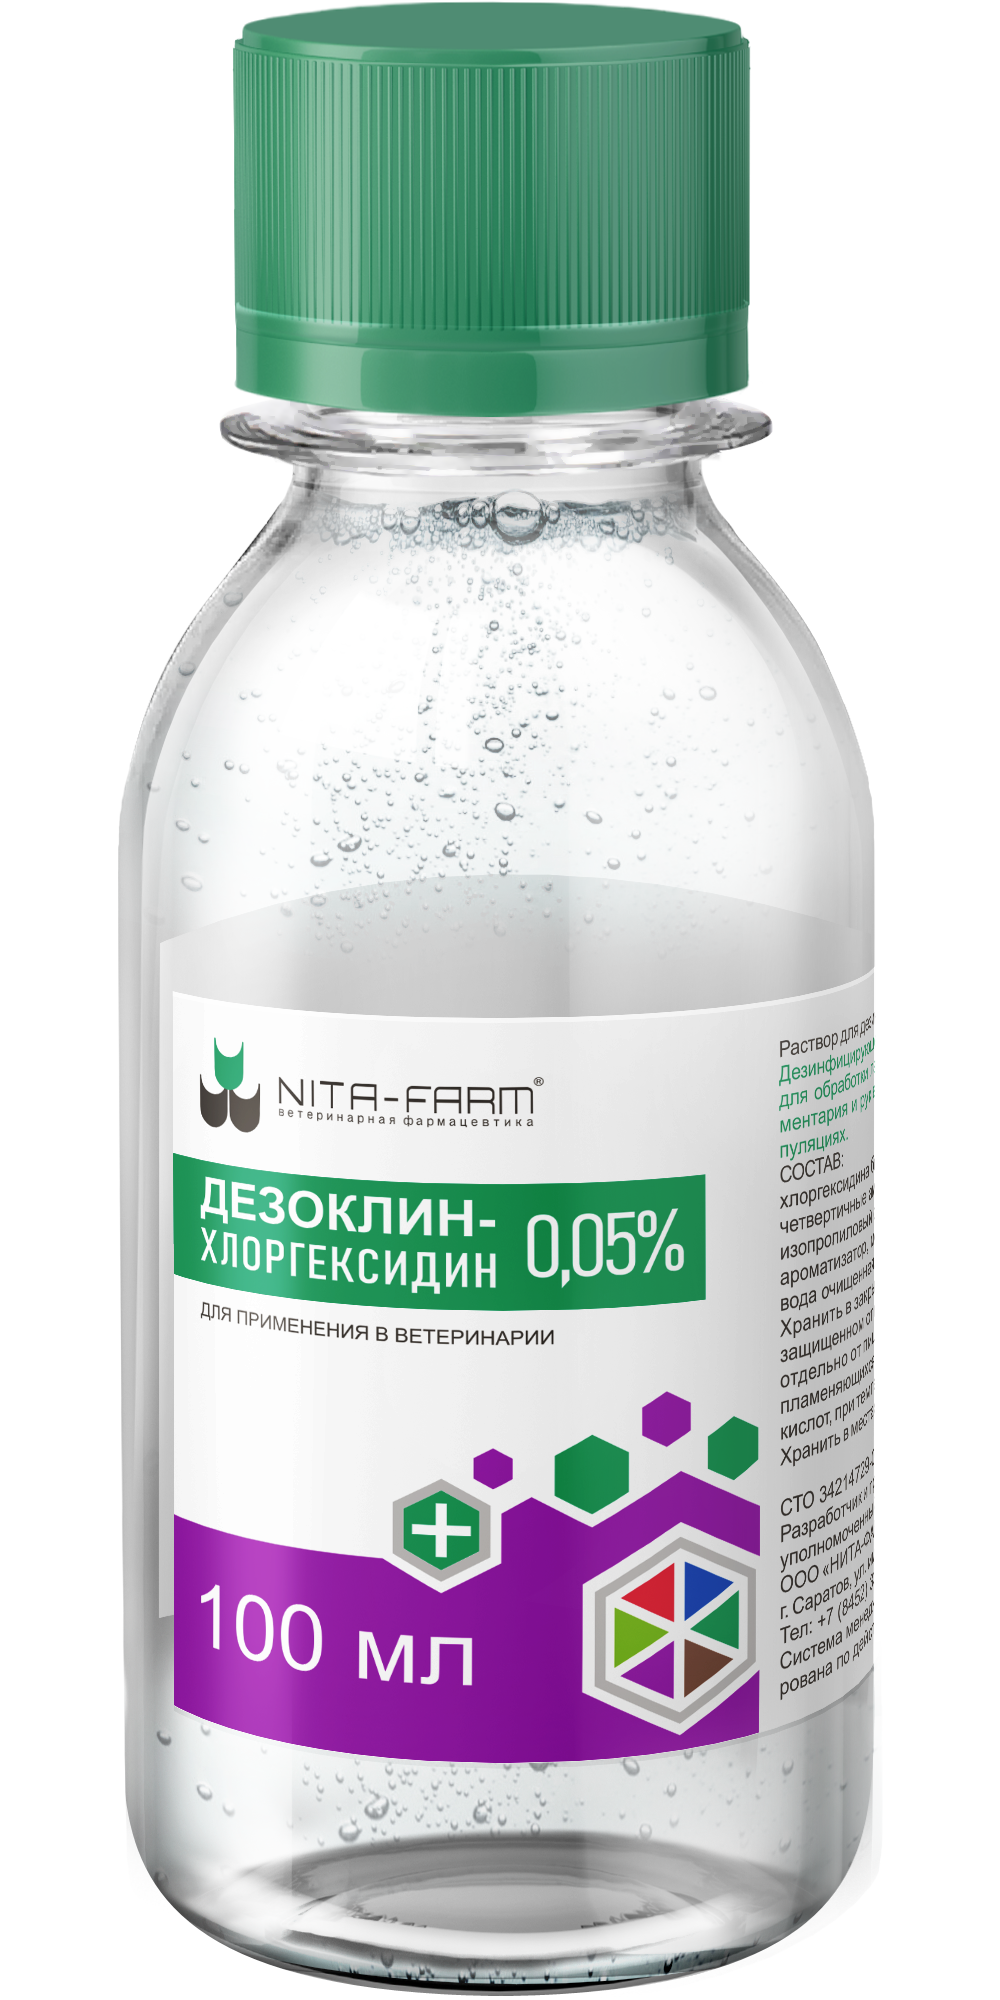 Дезоклин-хлоргексидин 0,05%